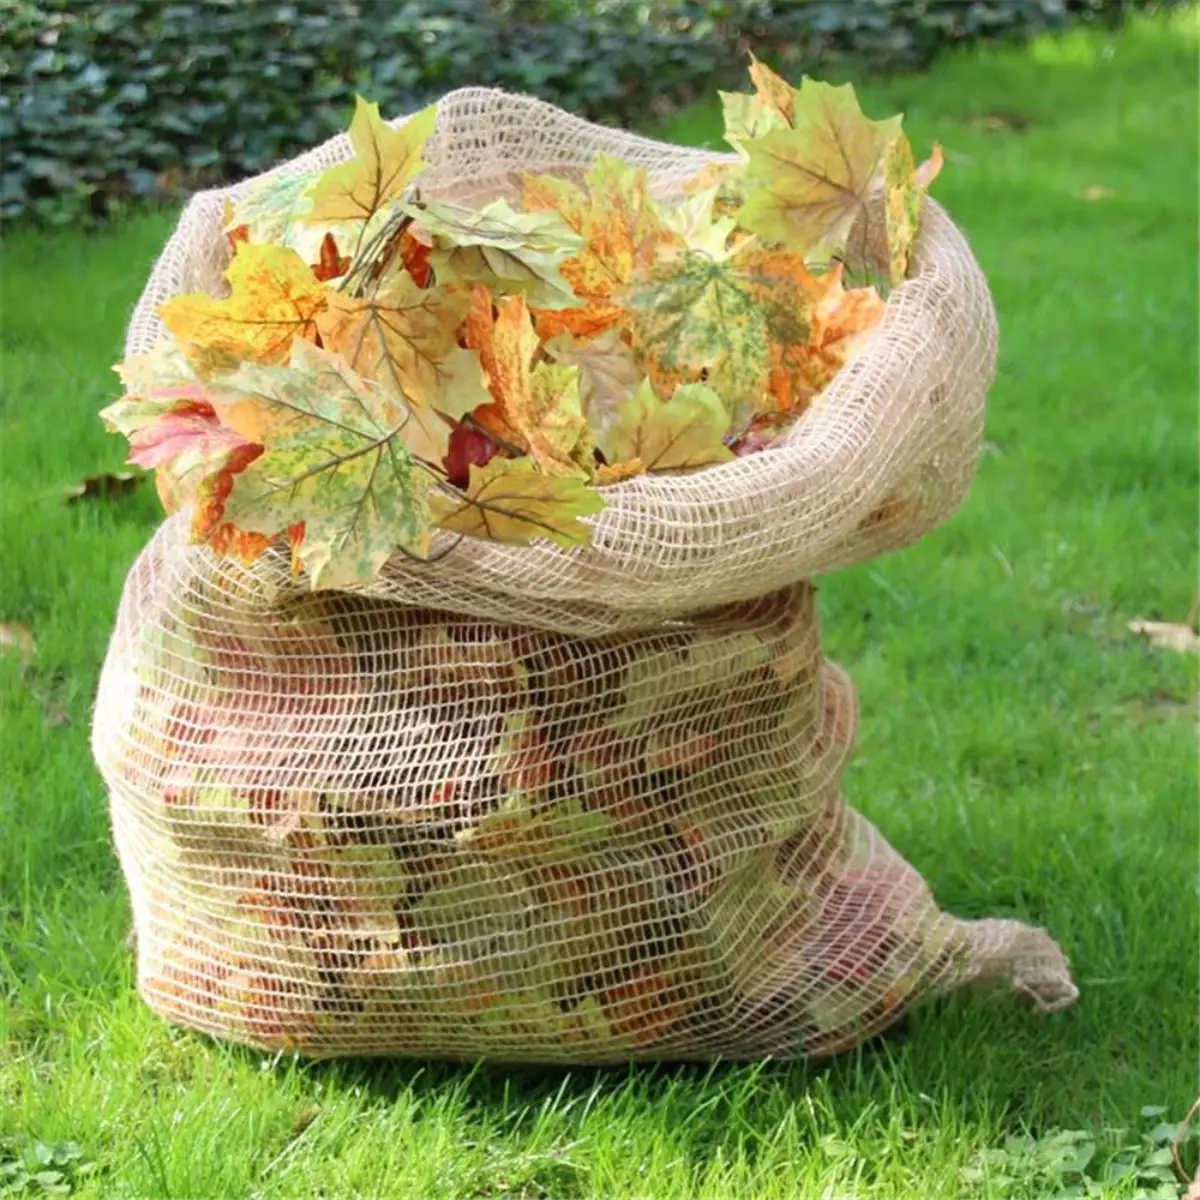 soll man das laub im garten liegen lassen koennen blaetter in den kompost laub in jutesack sammeln